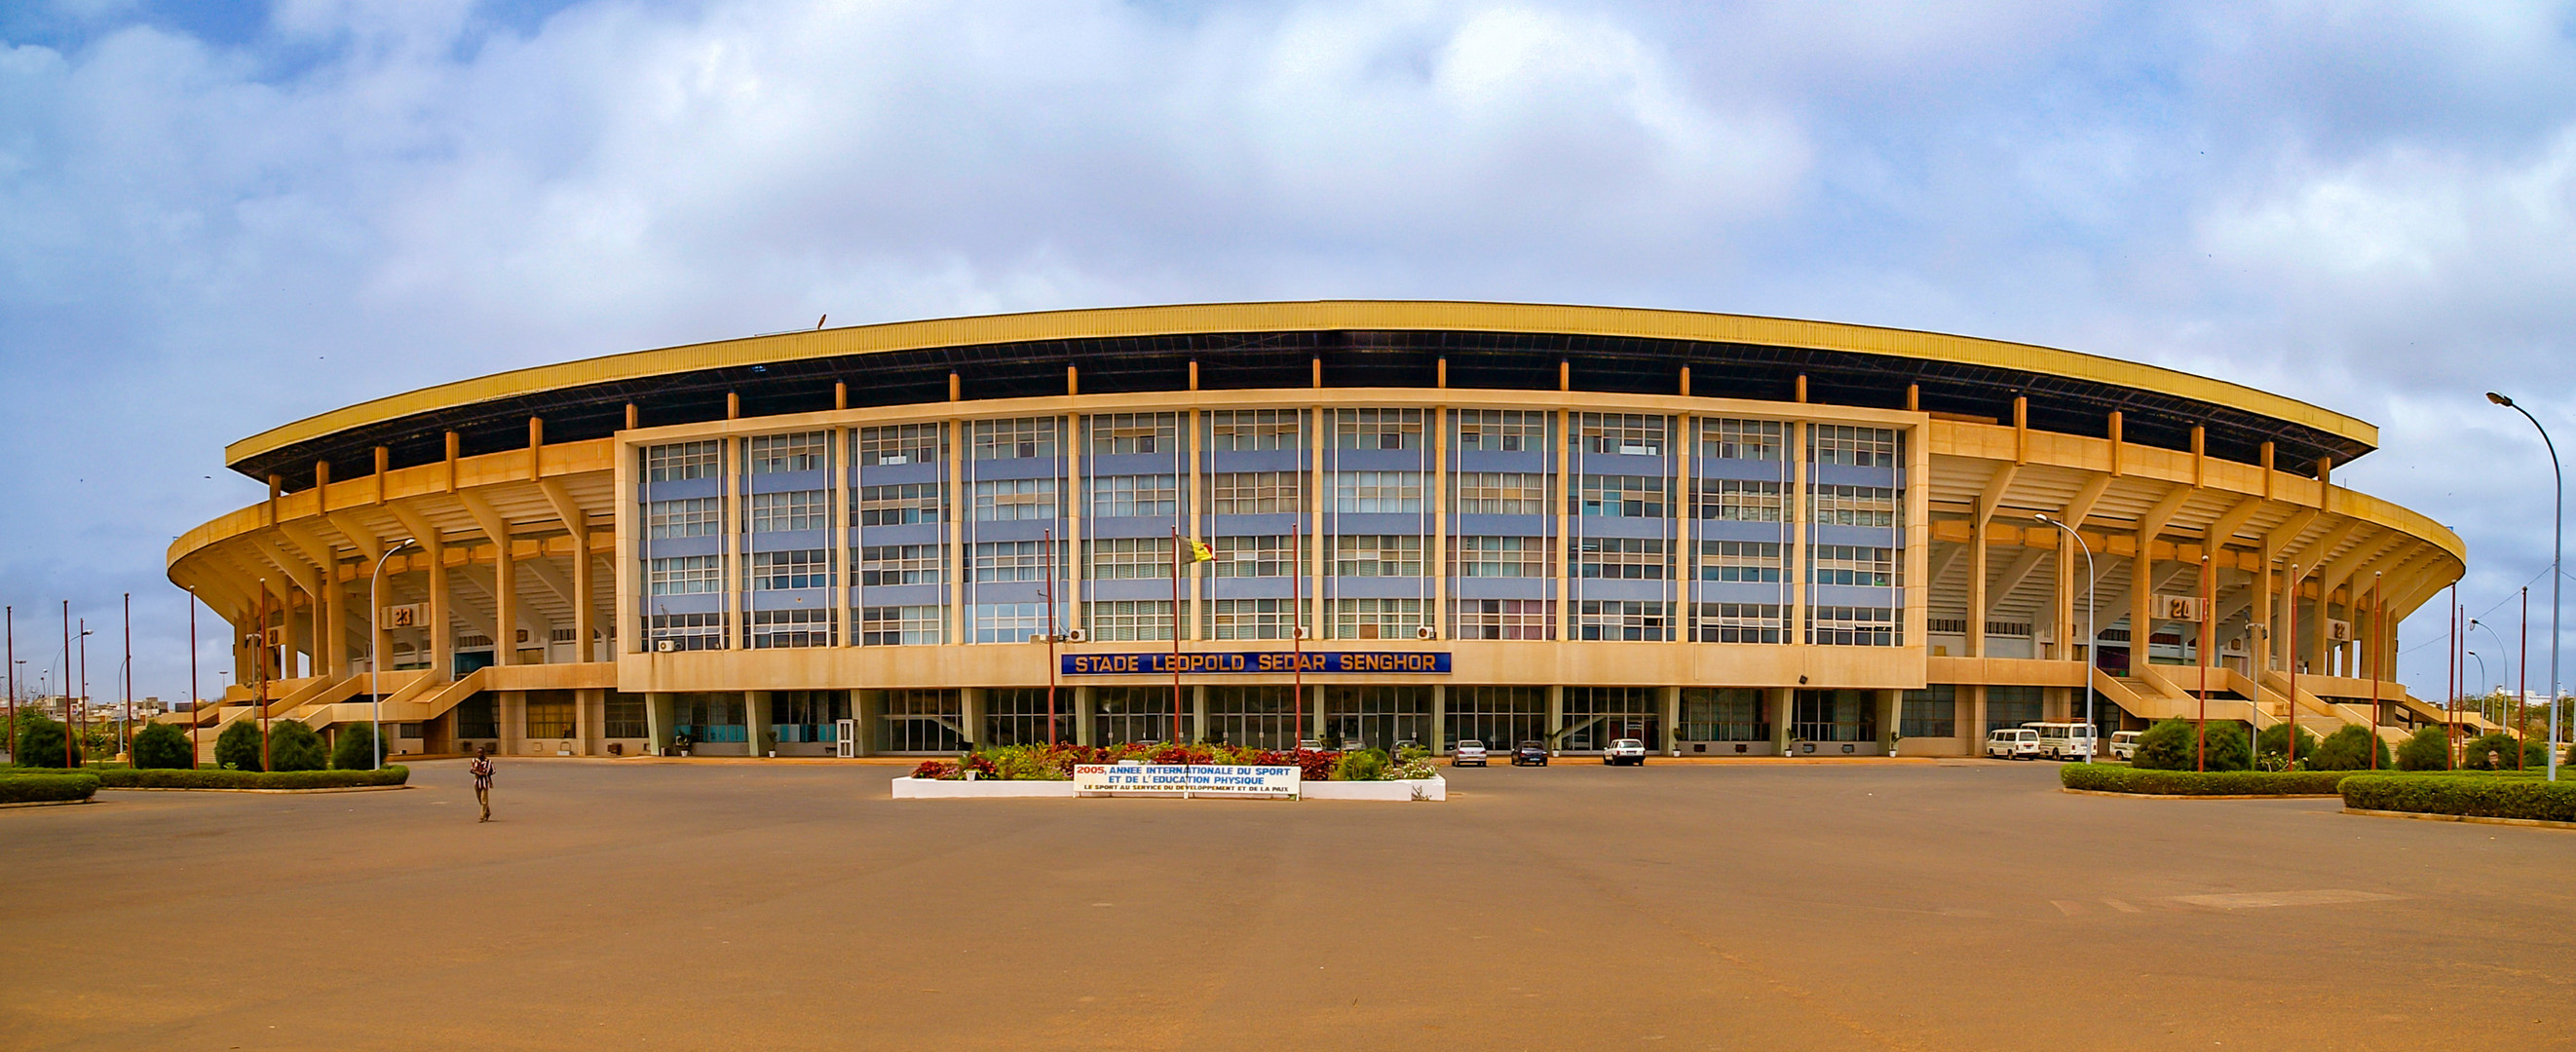  Stade Léopold Sédar Senghor